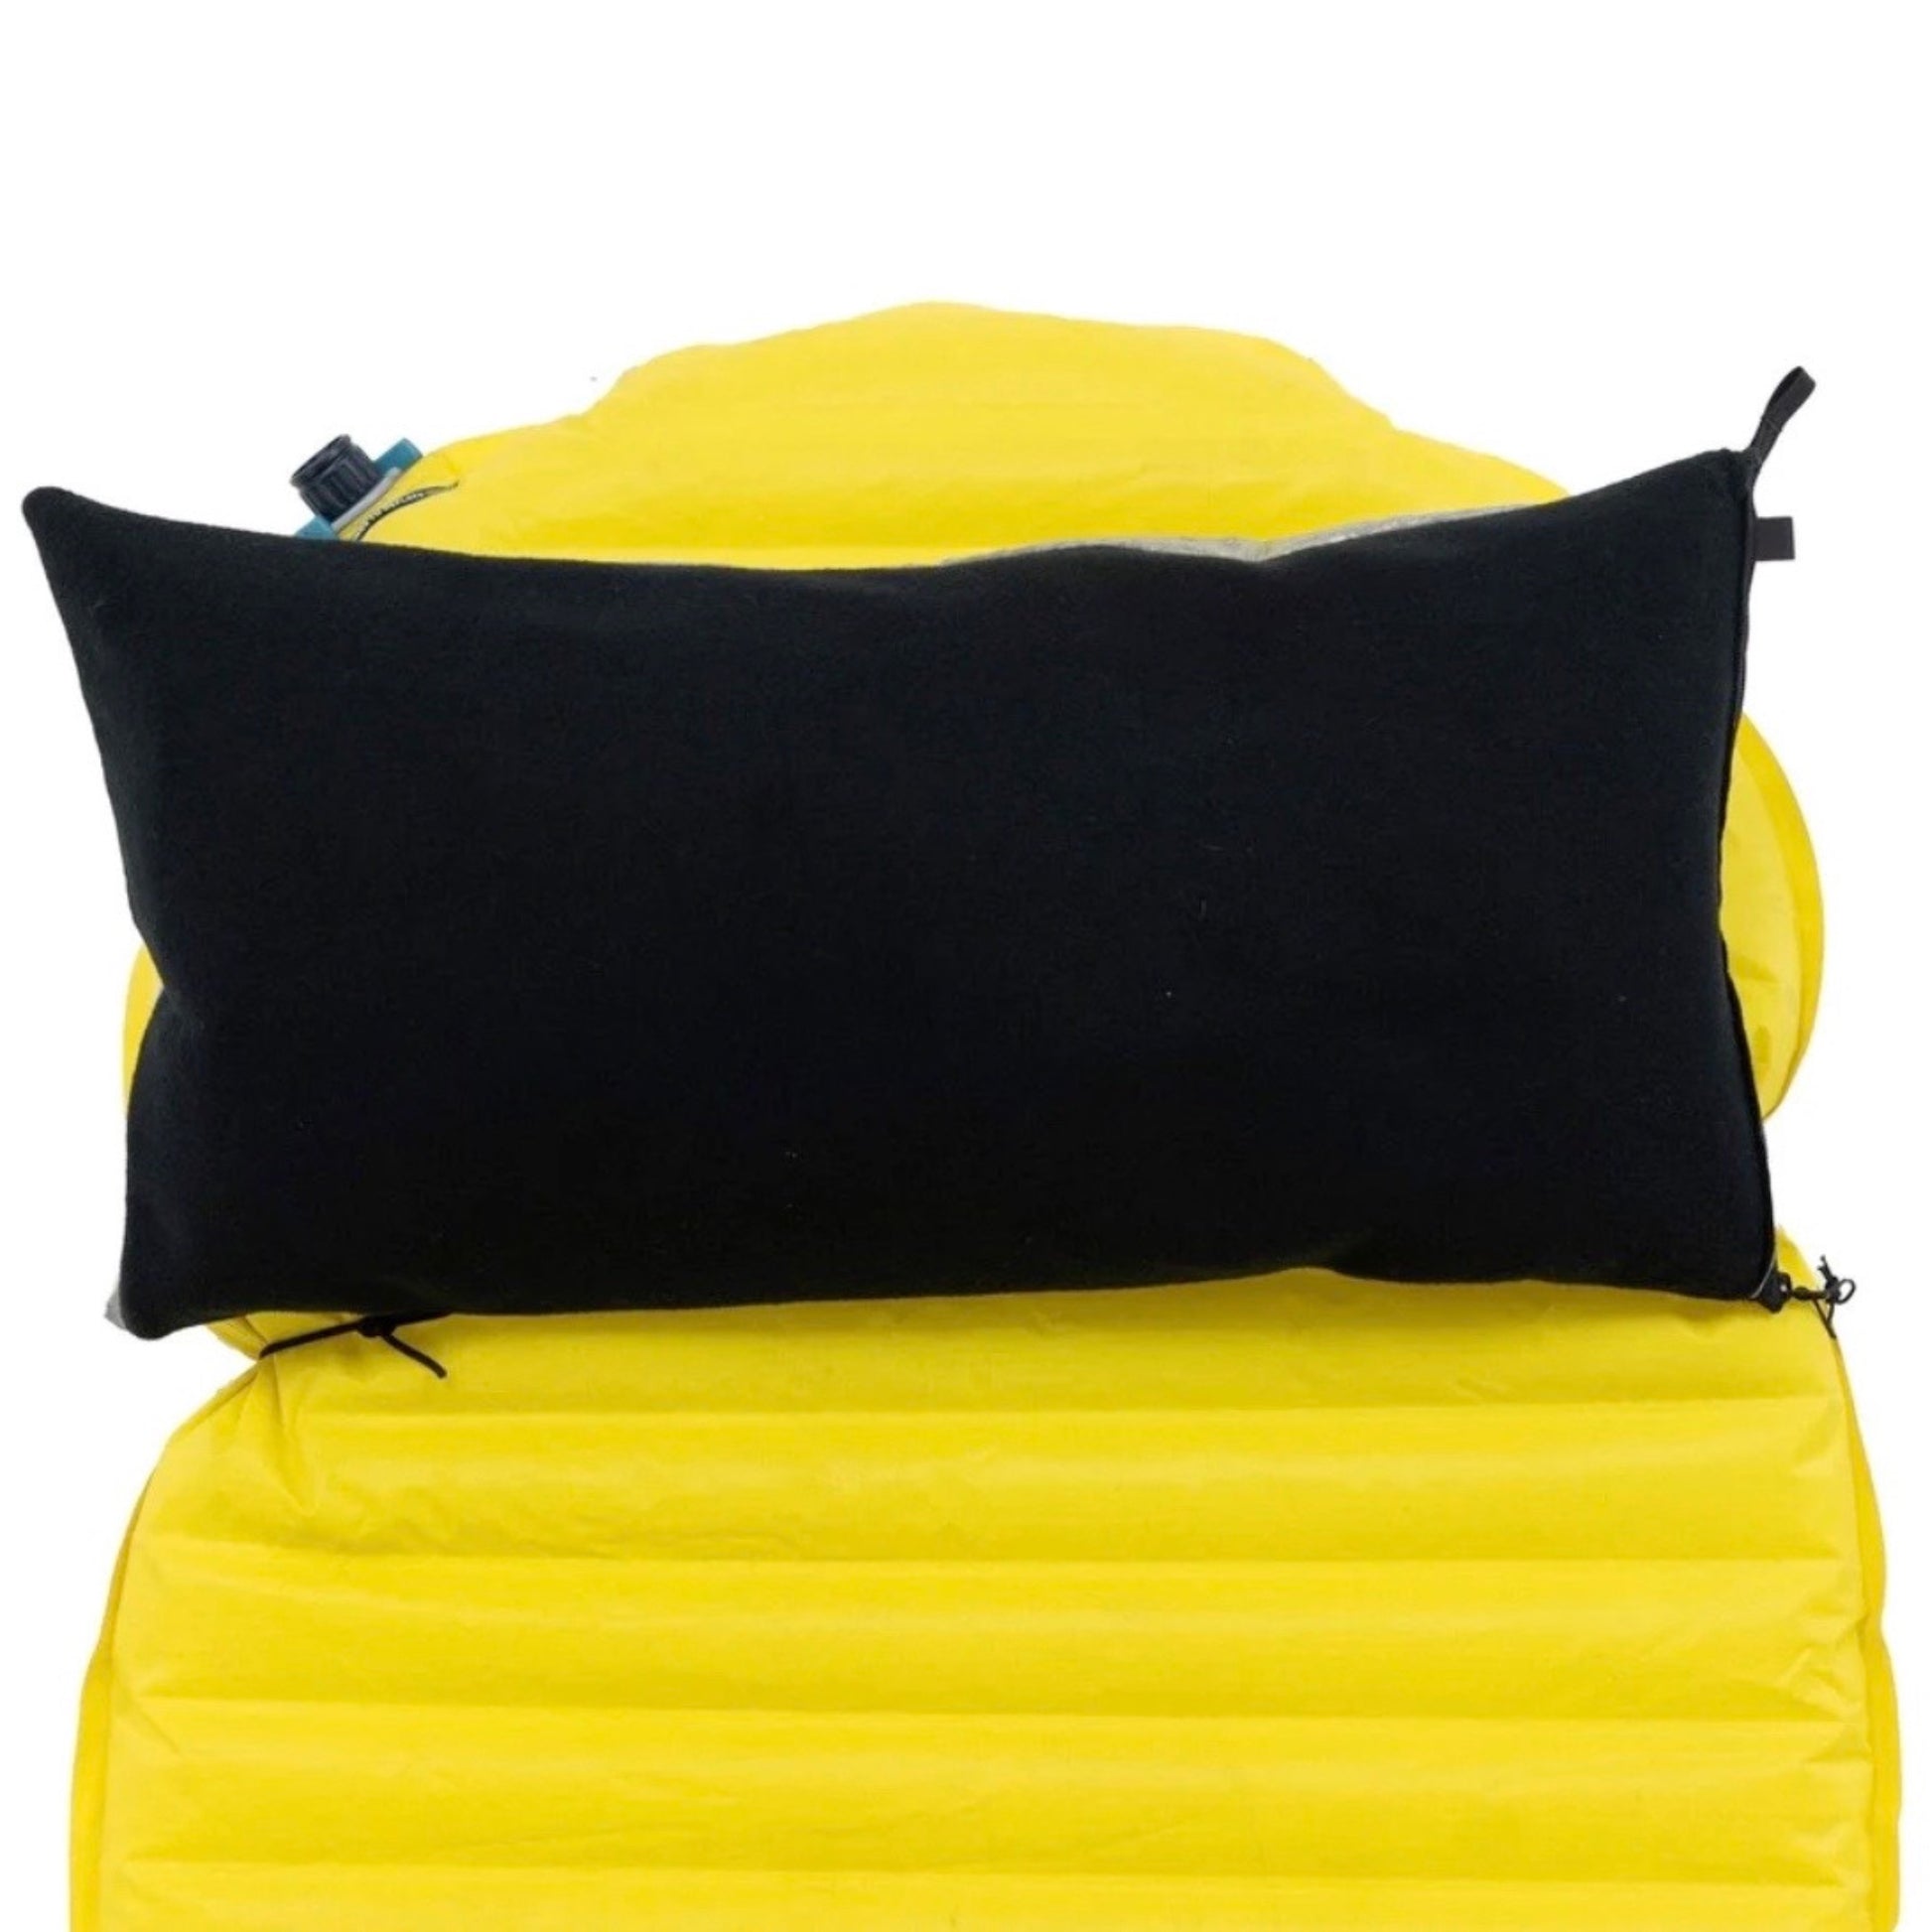 zpacks pillow dry bag attachment cord Ultralight Hiker